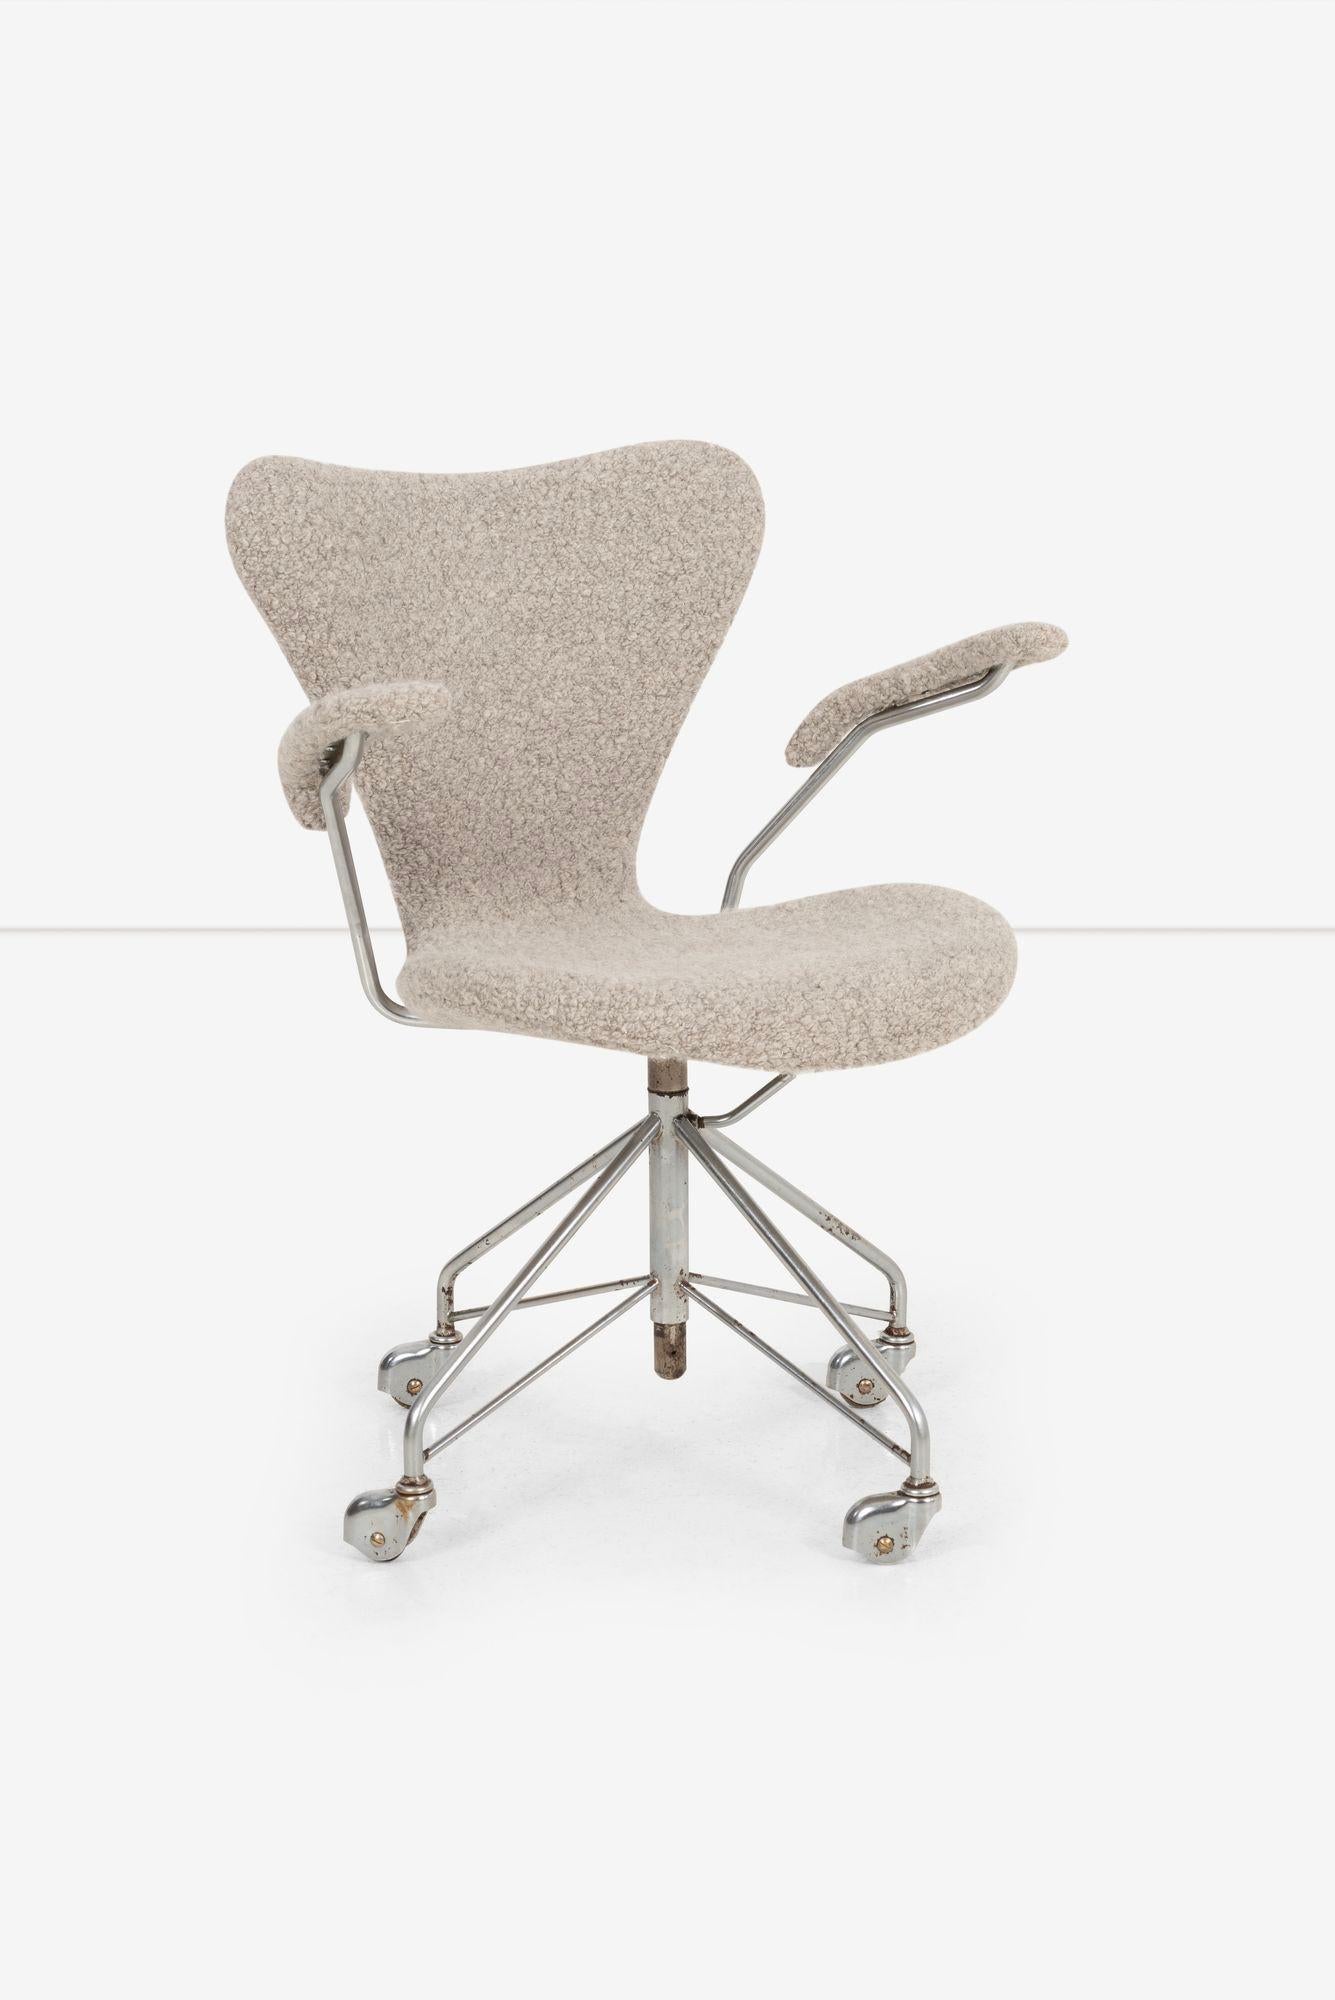 Mid-Century Modern Arne Jacobsen Sevener Desk Chair, model 3117 For Sale